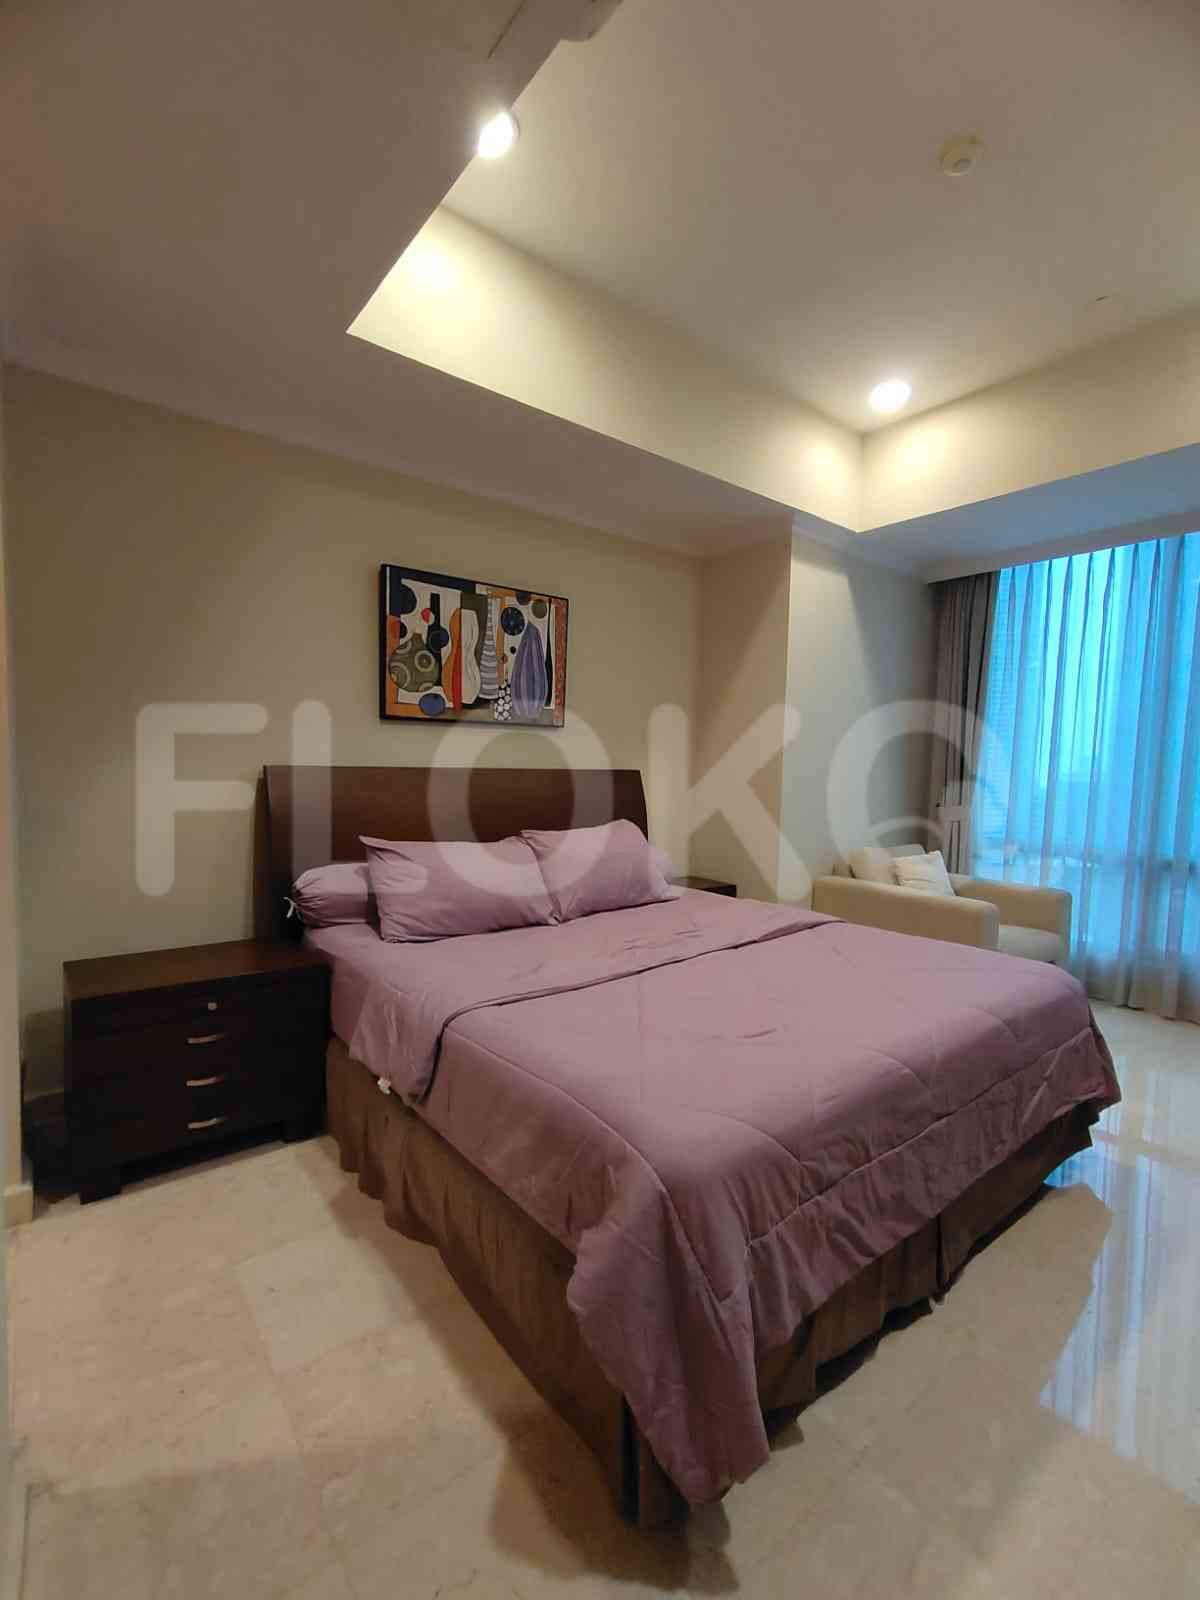 2 Bedroom on 12th Floor for Rent in Pavilion - fsc234 1